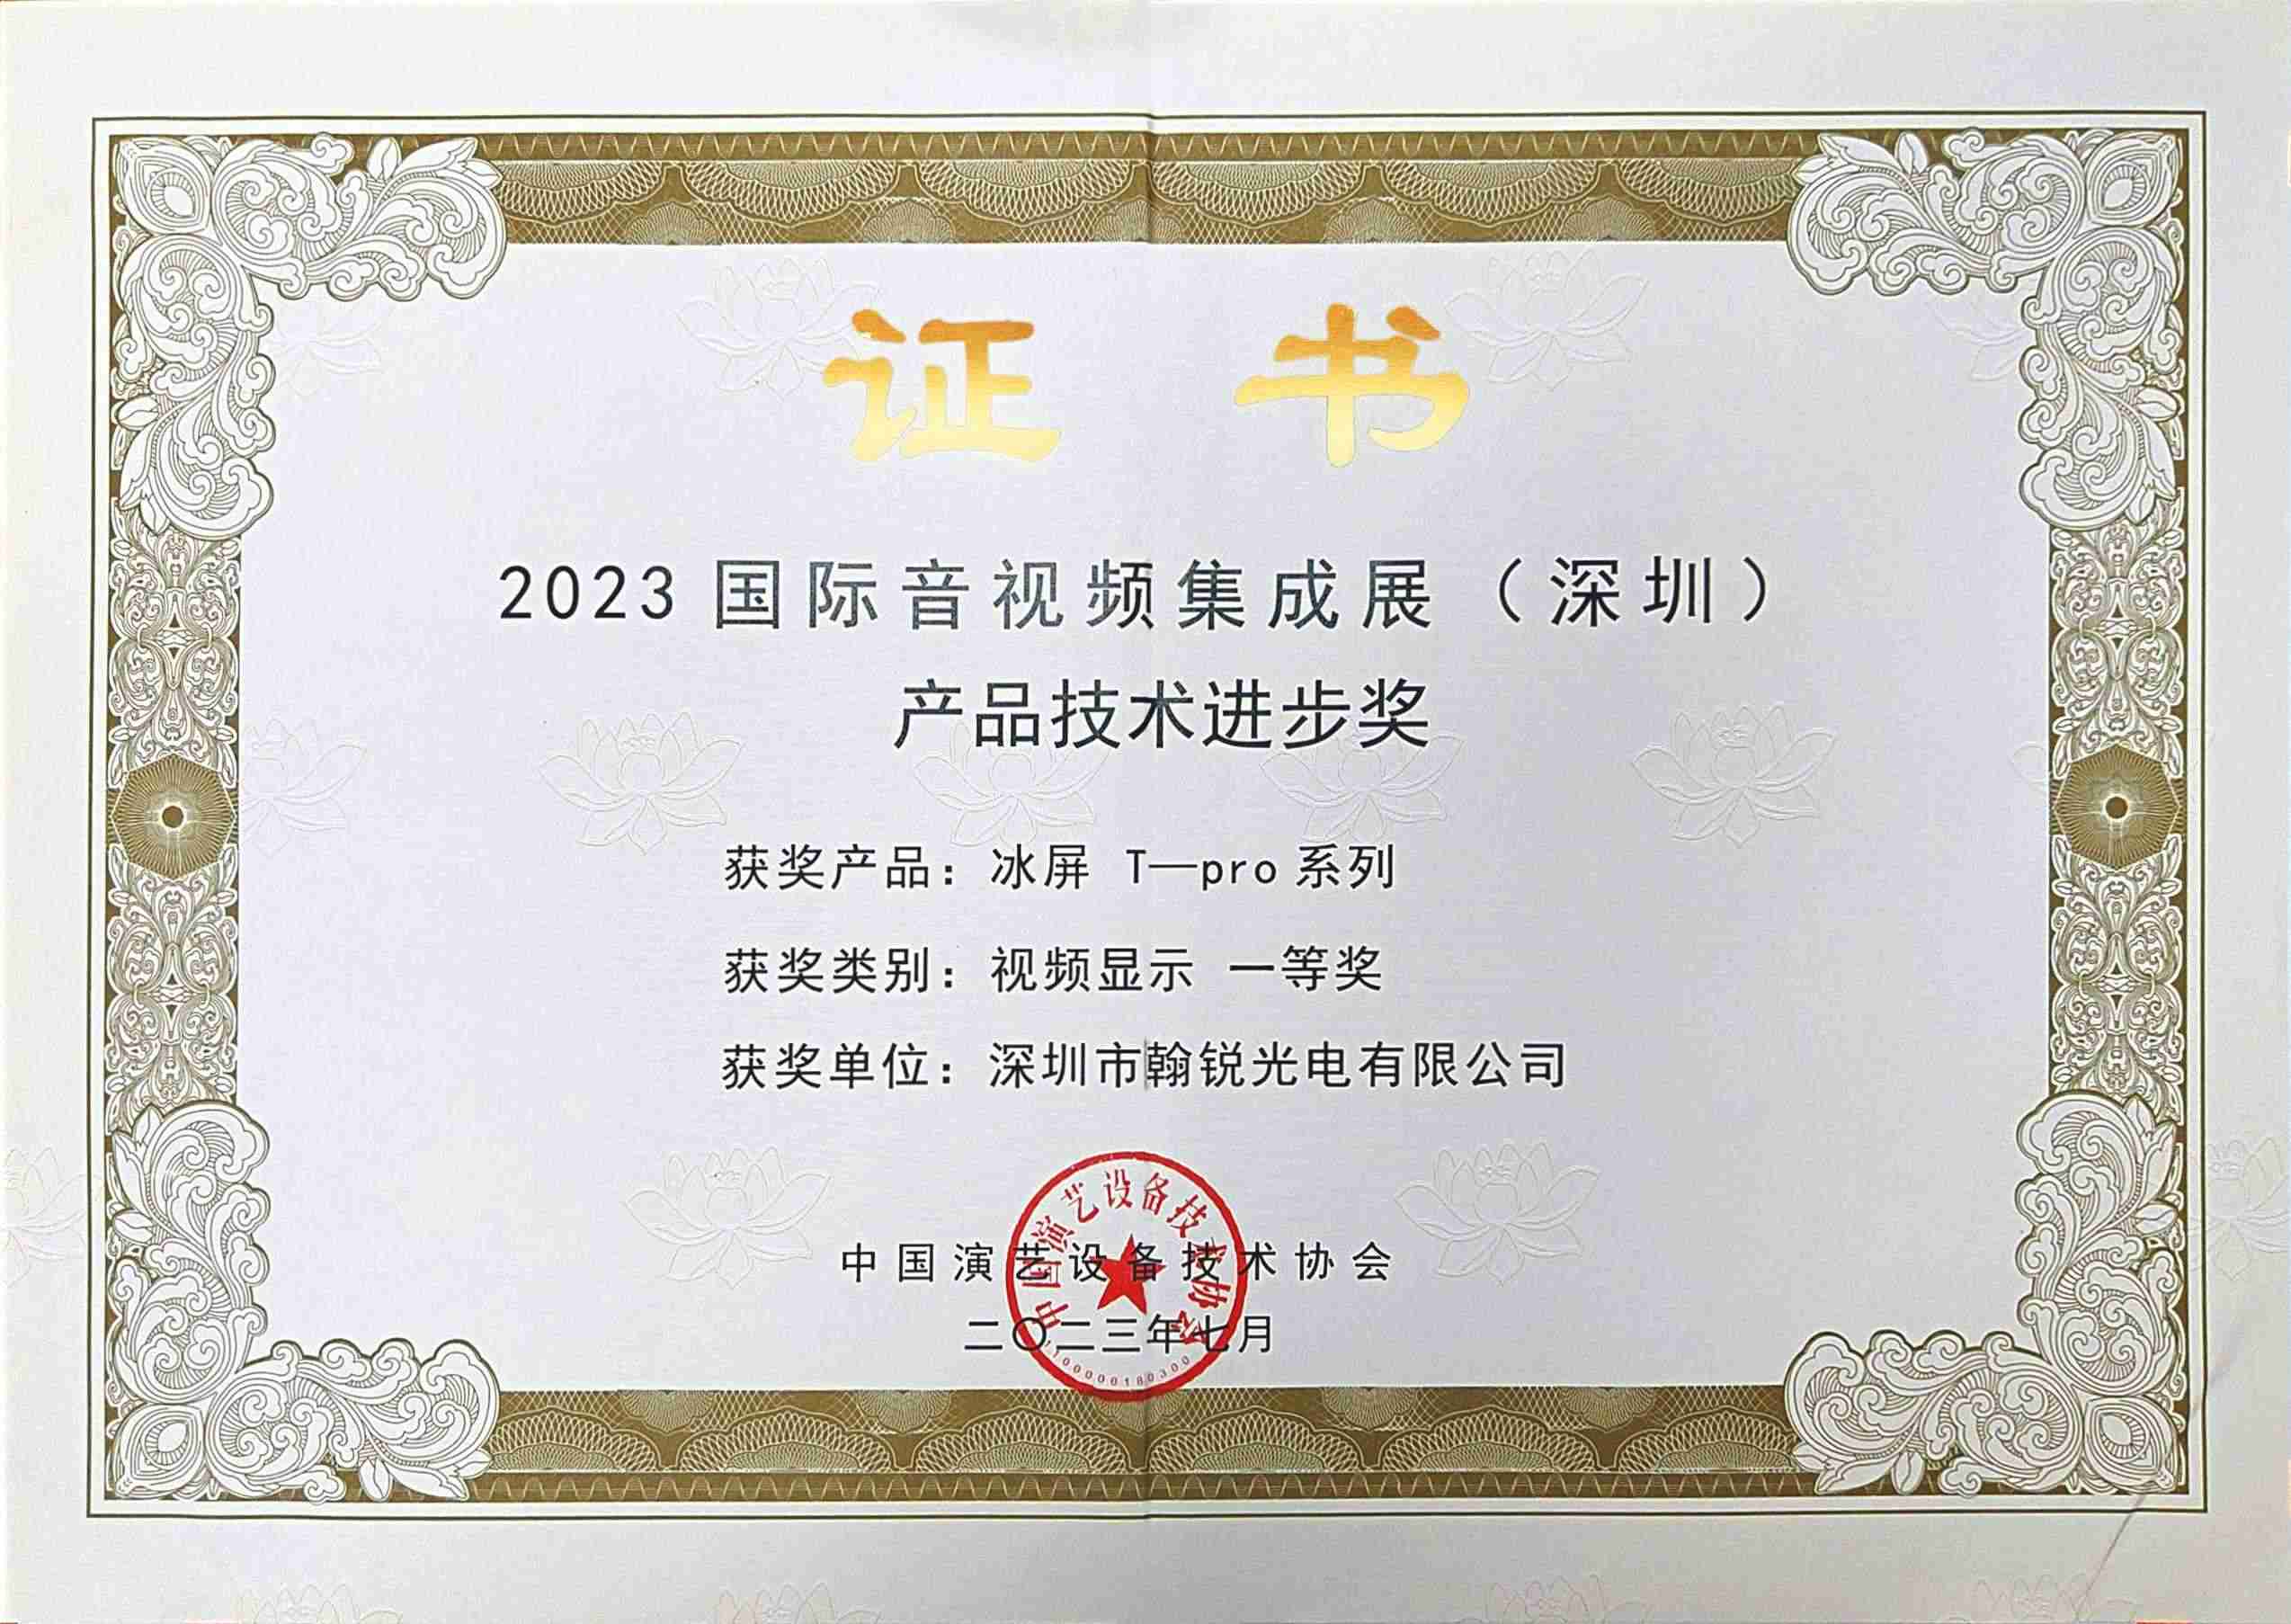 ¡Felicitaciones! Showtechled "Pantalla LED de hielo" ganó el primer premio emitido por la Asociación de Tecnología de Equipos de Artes Escénicas de China